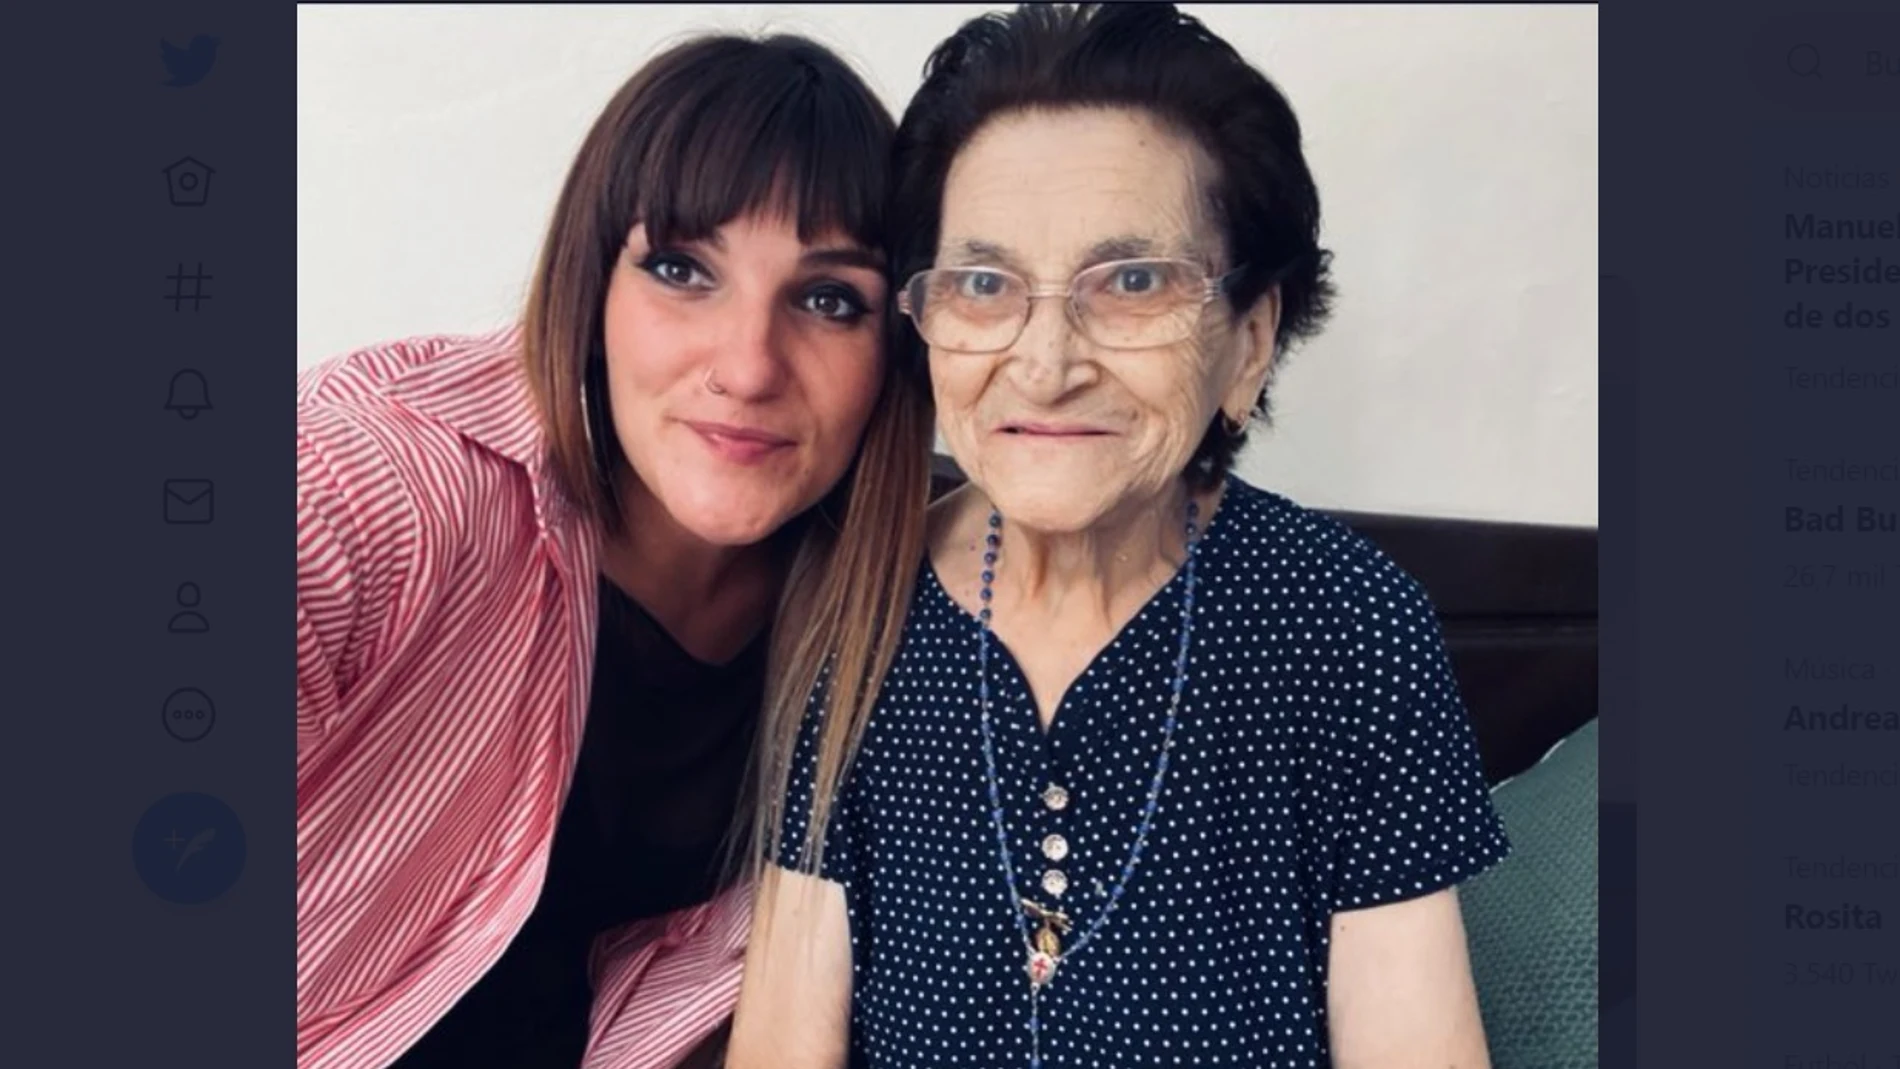 La cantante ha compartido una fotografía con su abuela Ángeles.